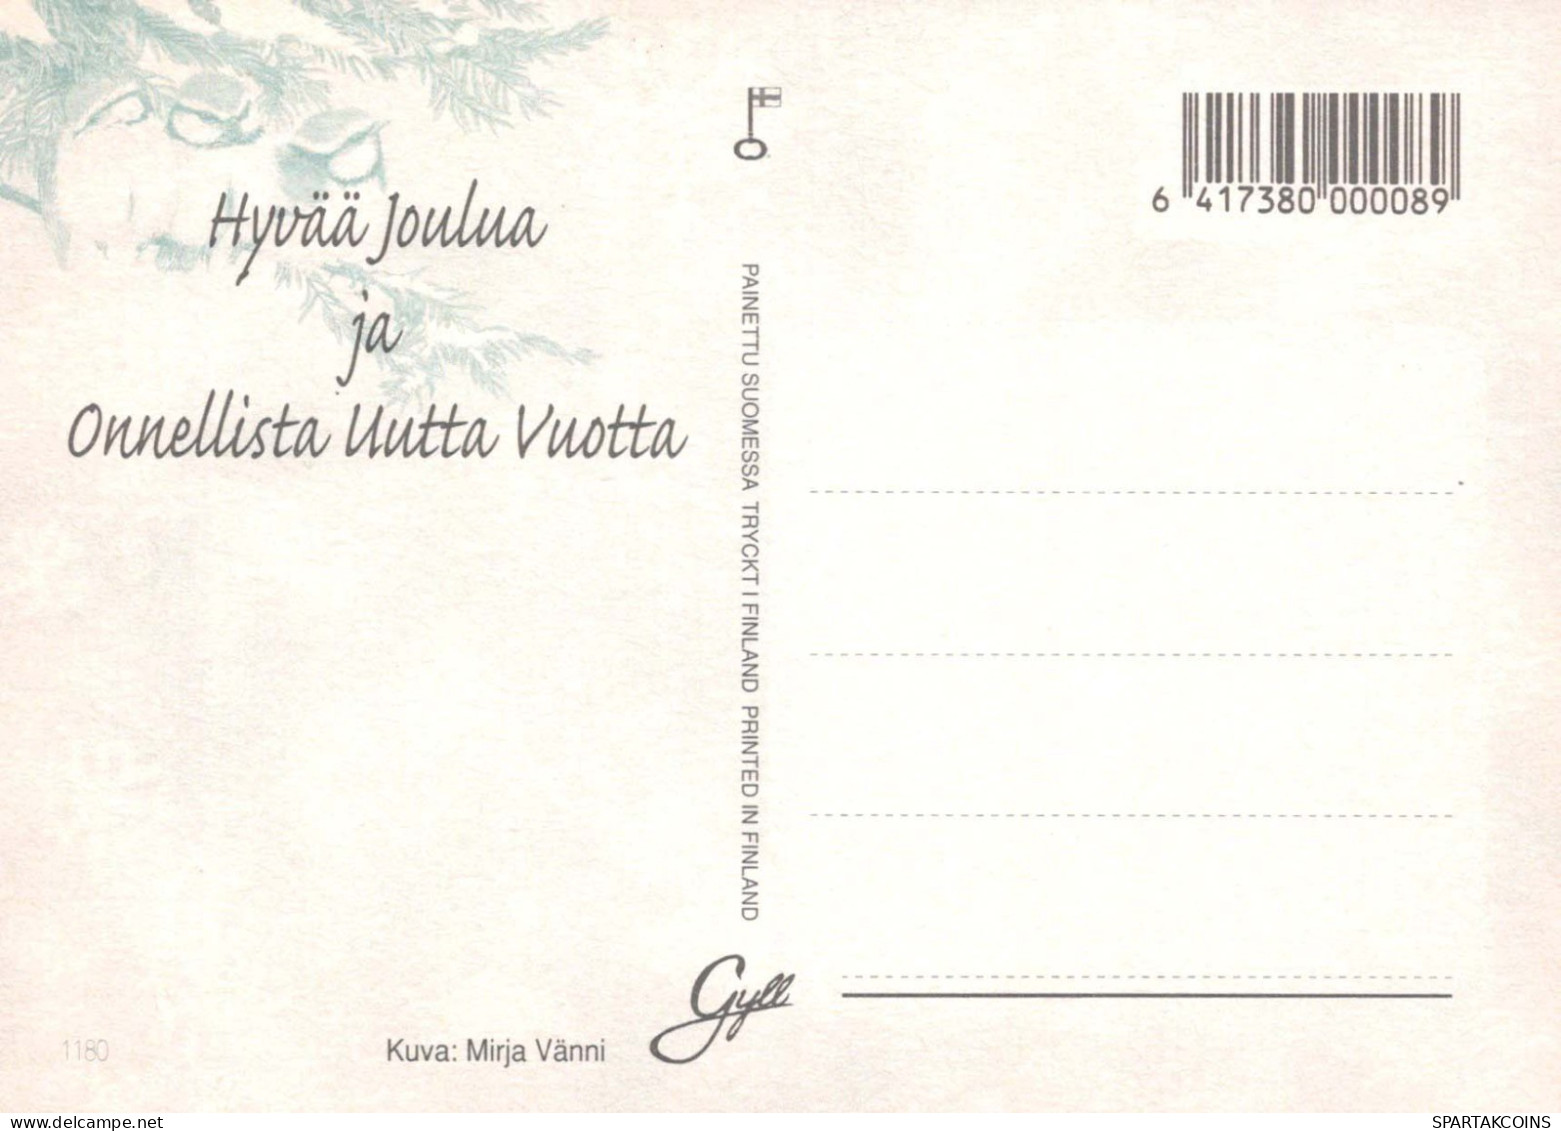 ANGE Noël Vintage Carte Postale CPSM #PBP262.FR - Anges